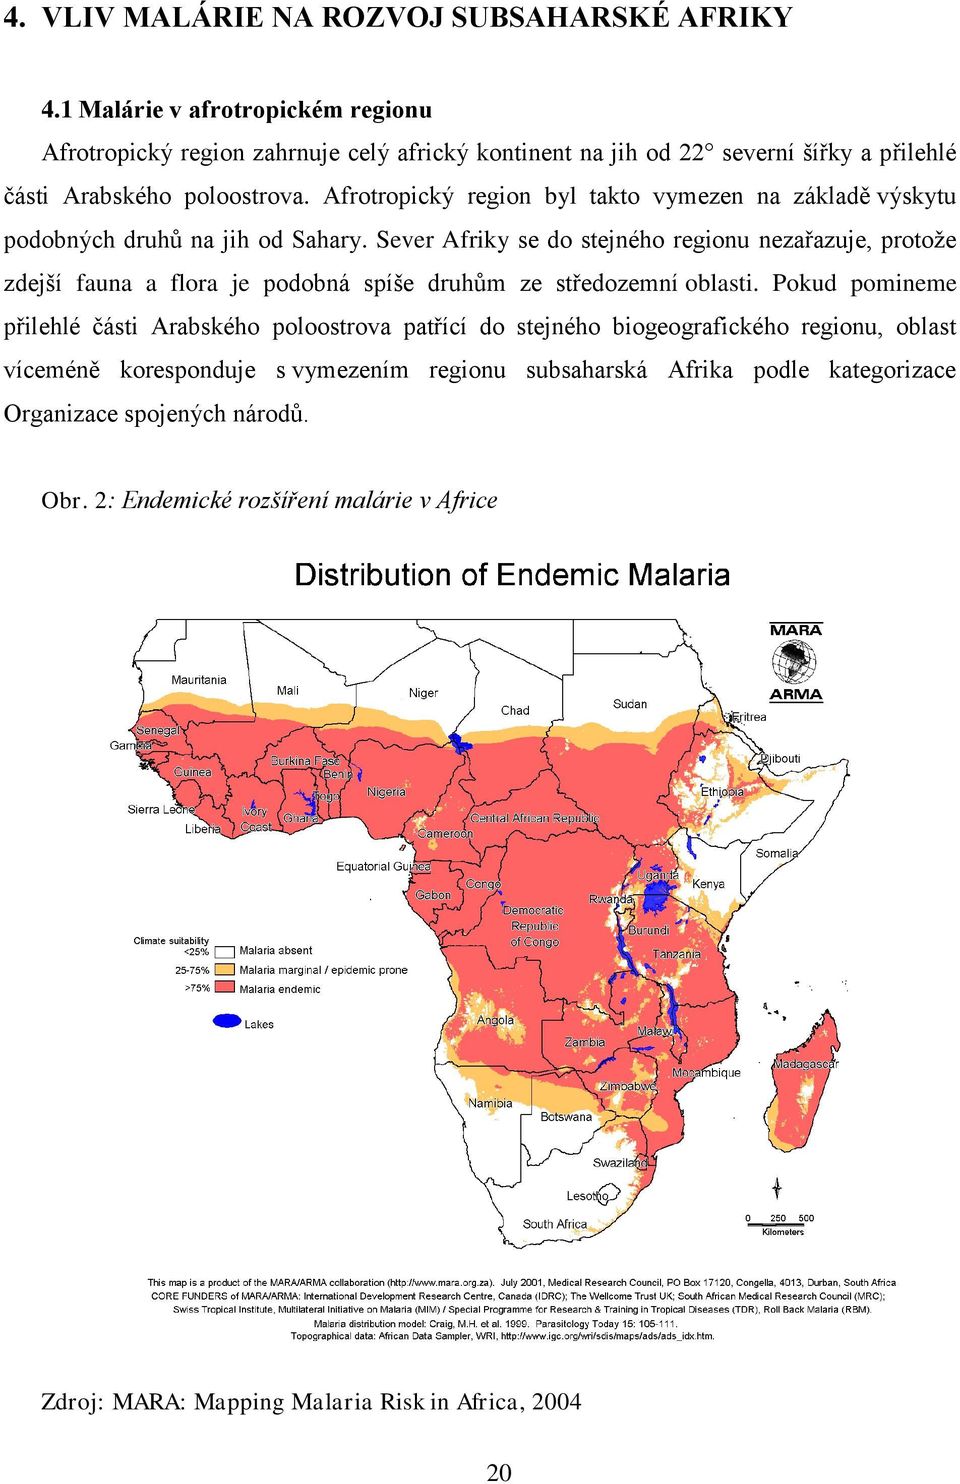 Afrotropický region byl takto vymezen na základě výskytu podobných druhů na jih od Sahary.